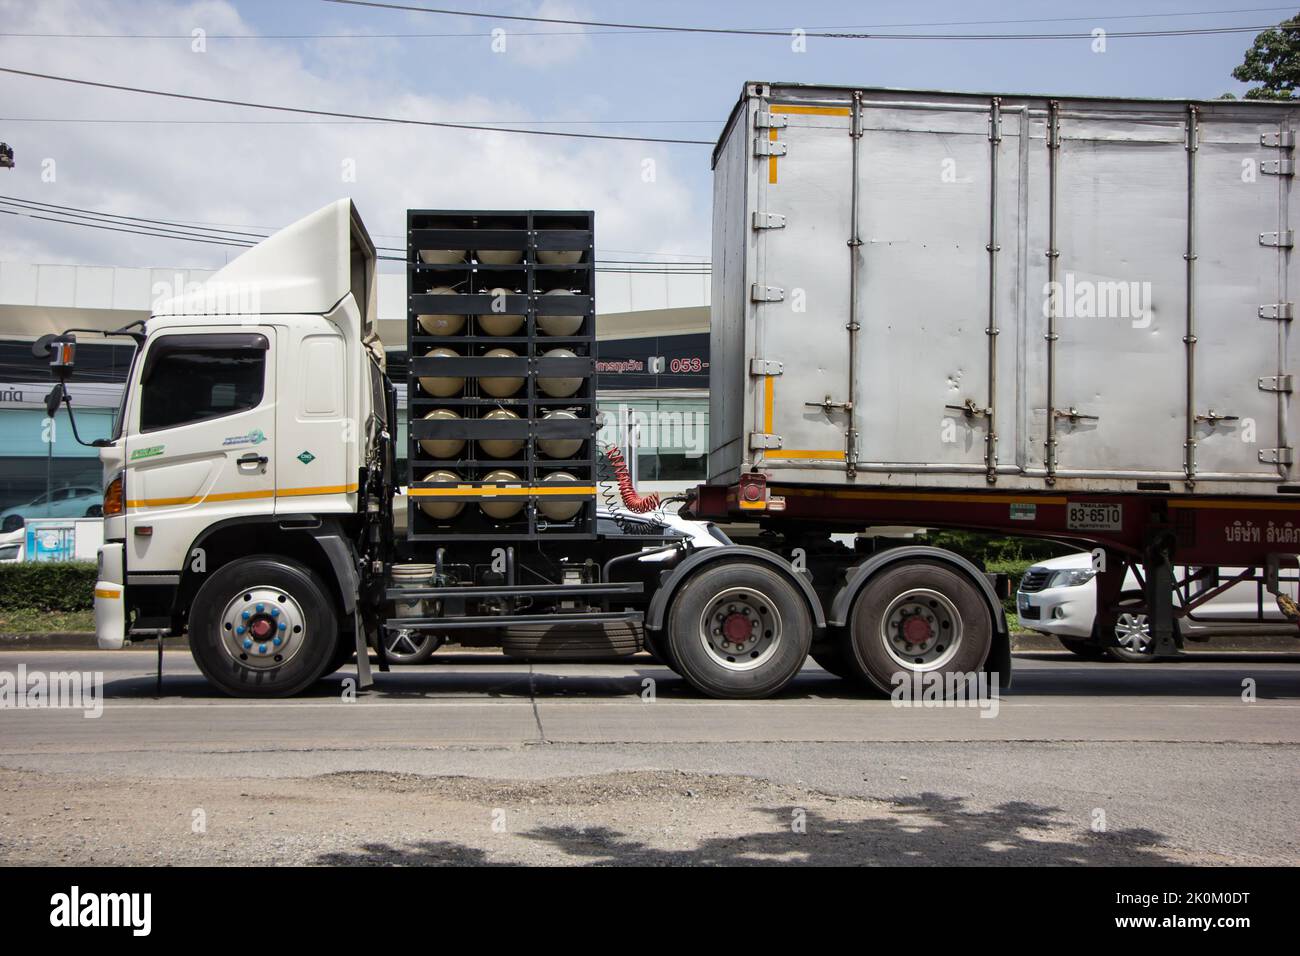 Chiangmai, Thaïlande - 13 juin 2022: Remorque conteneur camion de la compagnie Santipab. Photo sur la route n°1001 à environ 8 km du centre ville, thaïlande. Banque D'Images